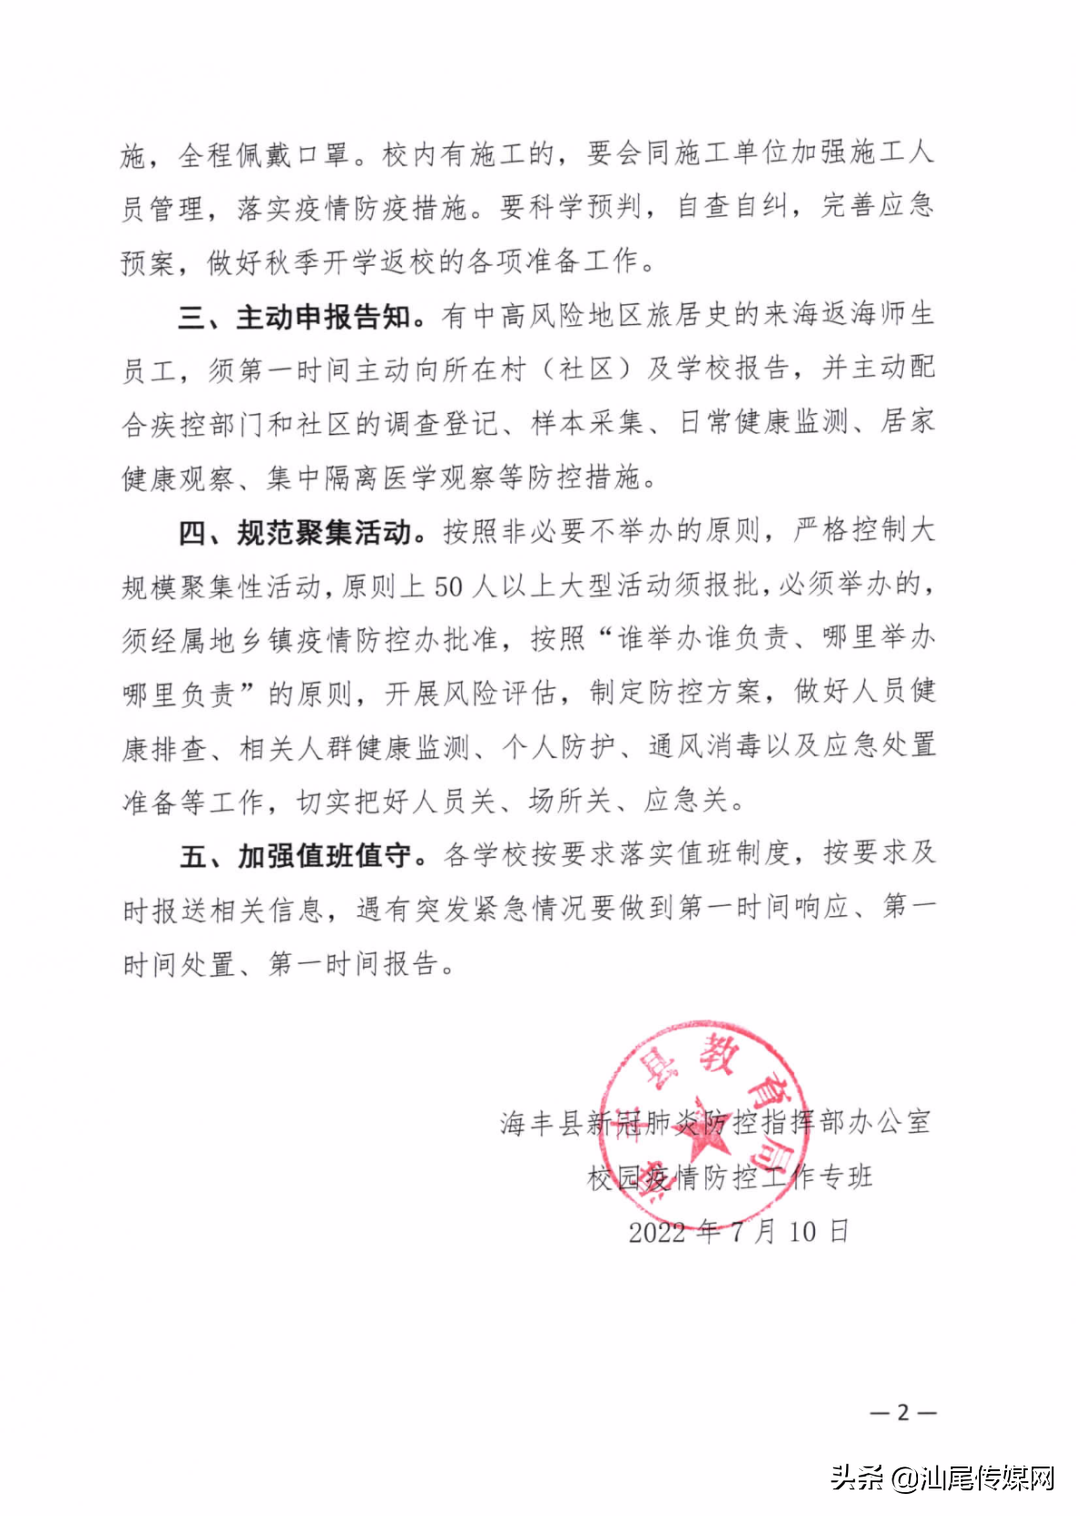 海丰县教育局发布最新通知